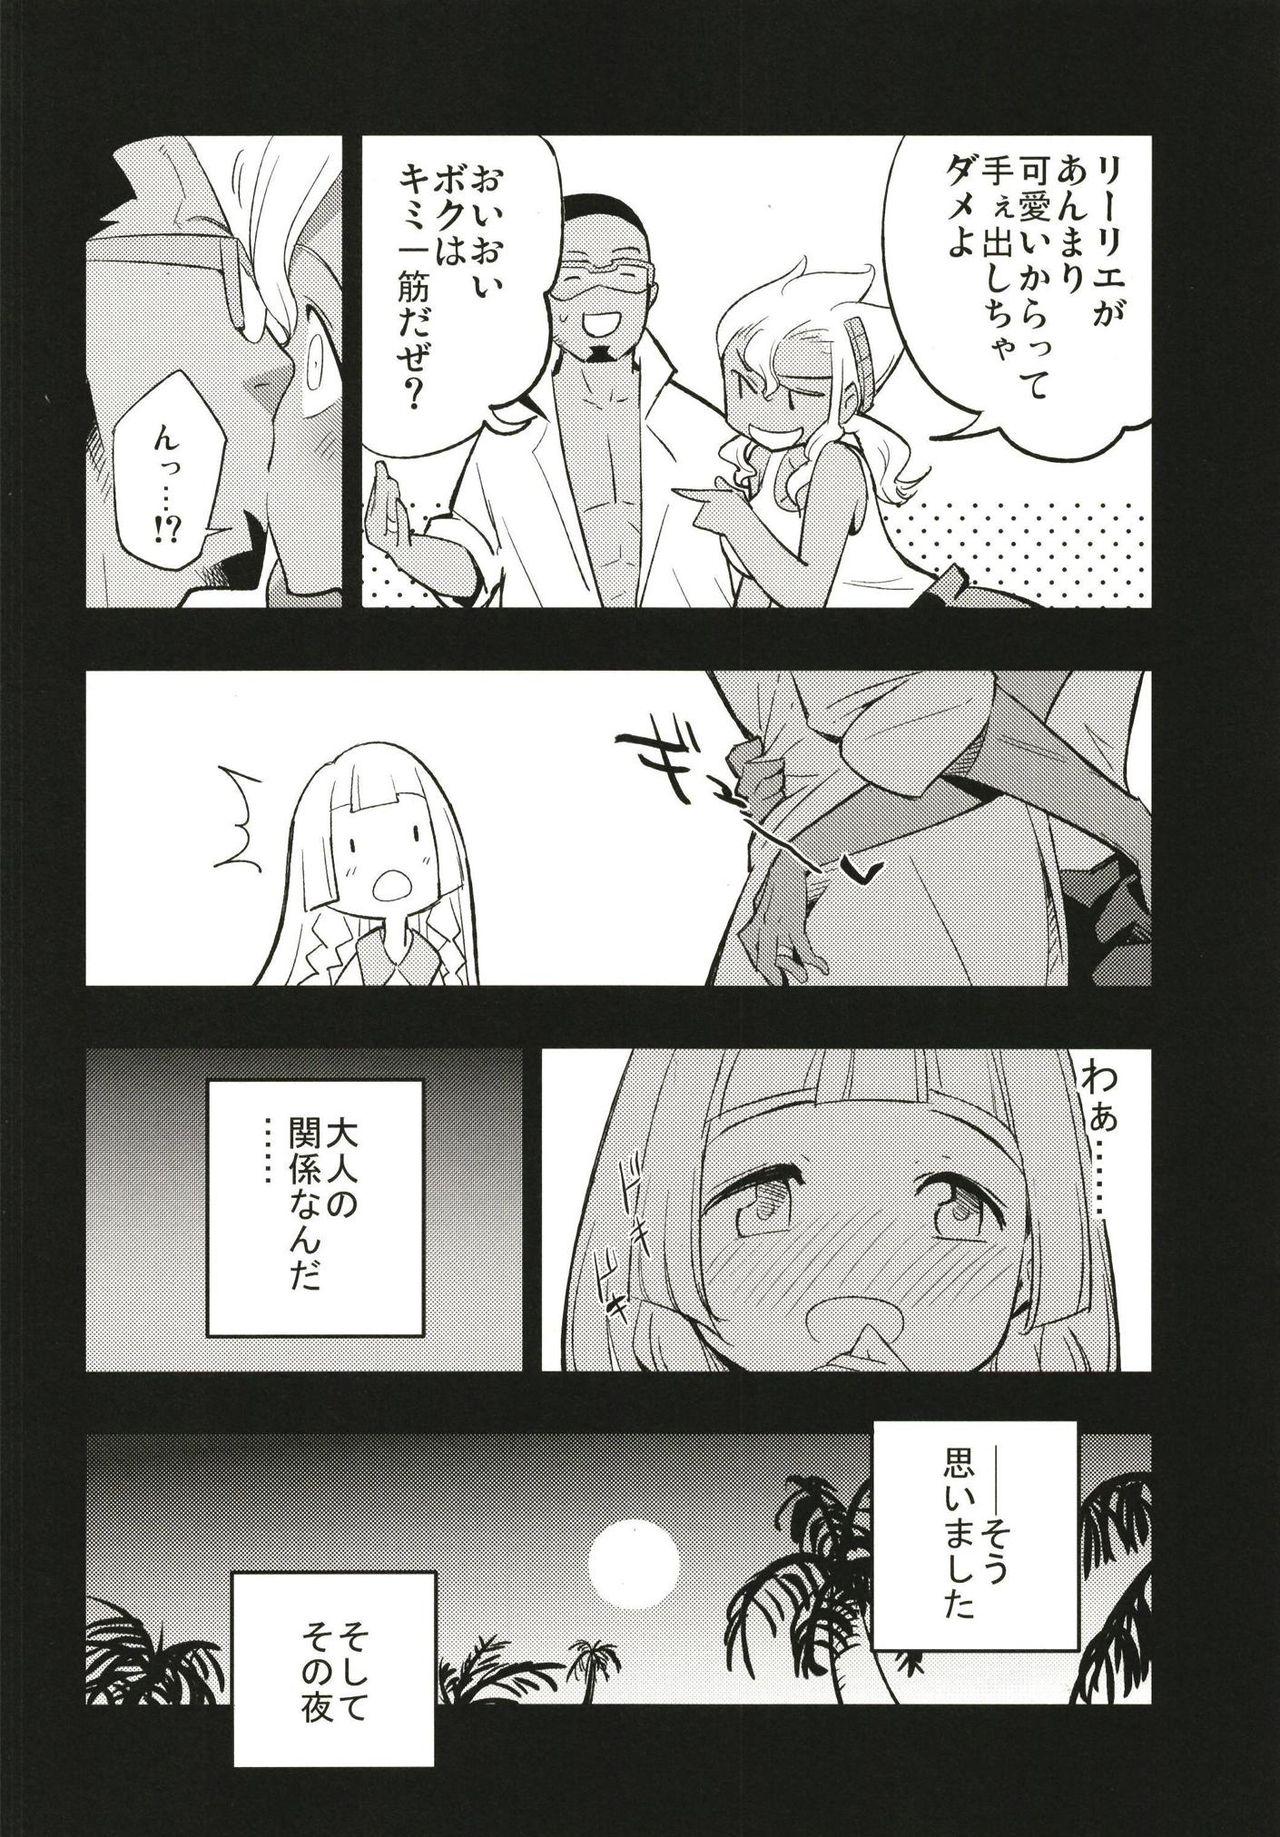 Hermosa Hakase no Yoru no Joshu. - Pokemon Safado - Page 6